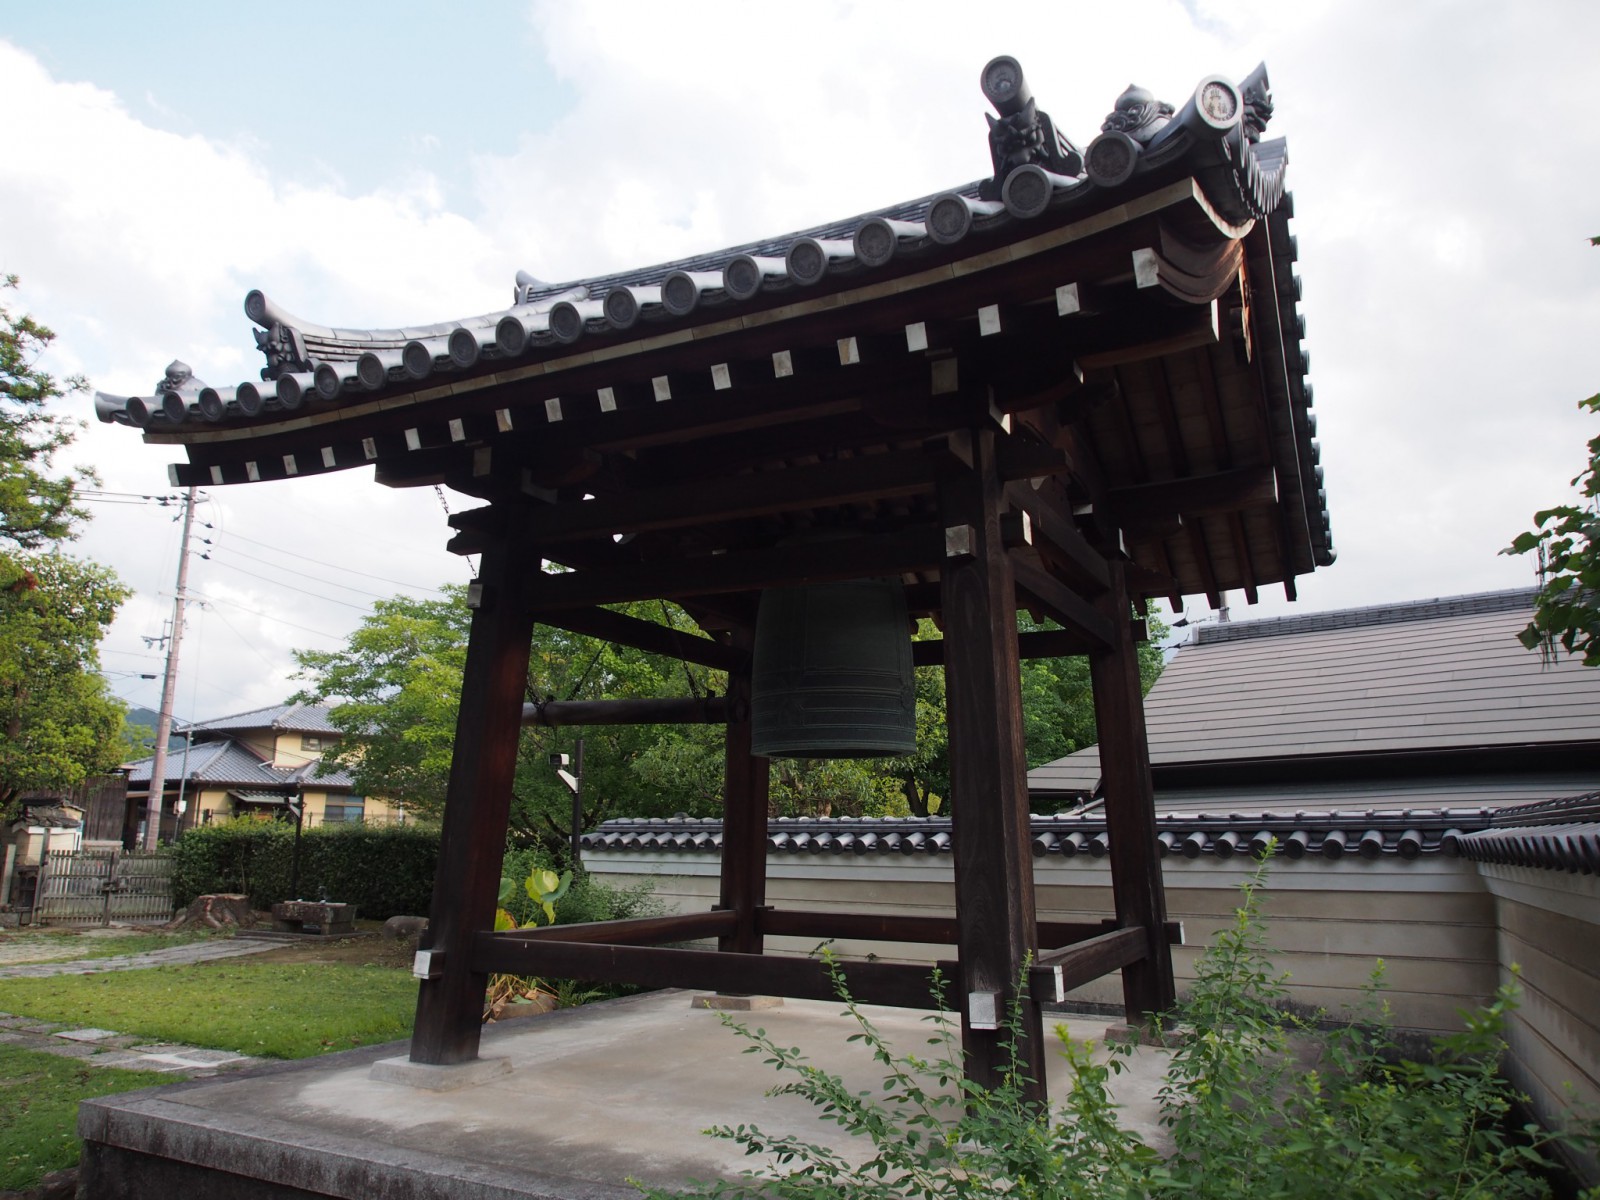 興福寺菩提院の鐘楼